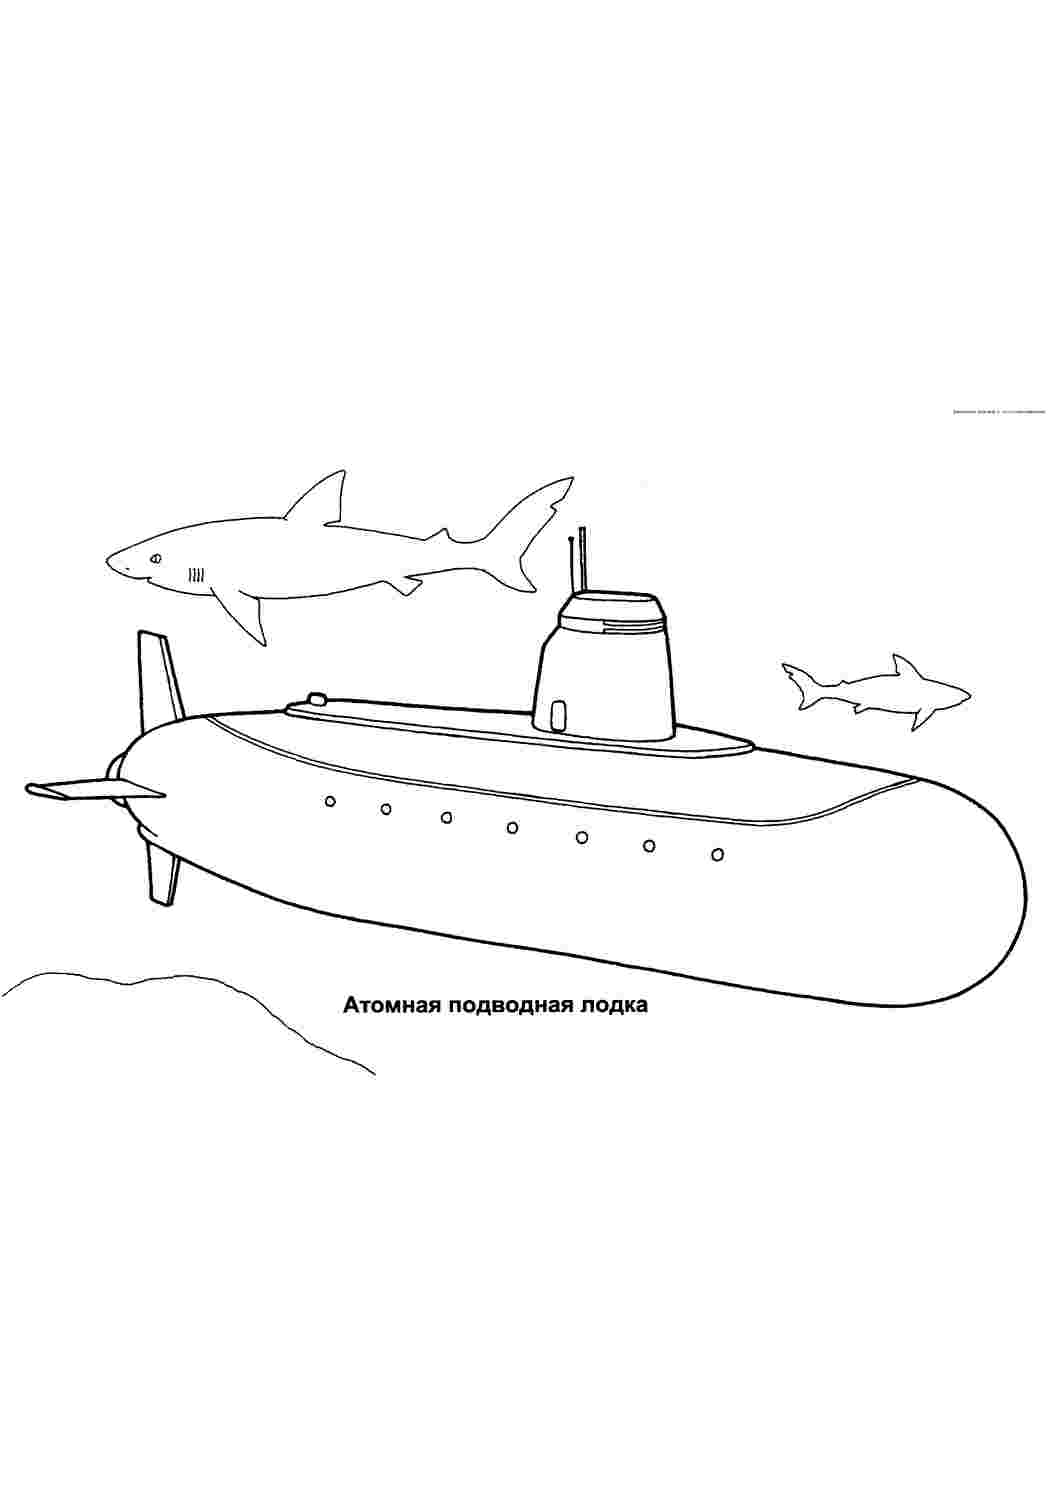 Раскраски Раскраски подводный мир детская раскраска,  подводныймир,  атомная подводная лодка Раскраски подводный мир детская раскраска,  подводныймир,  атомная подводная лодка  Раскраски скачать онлайн